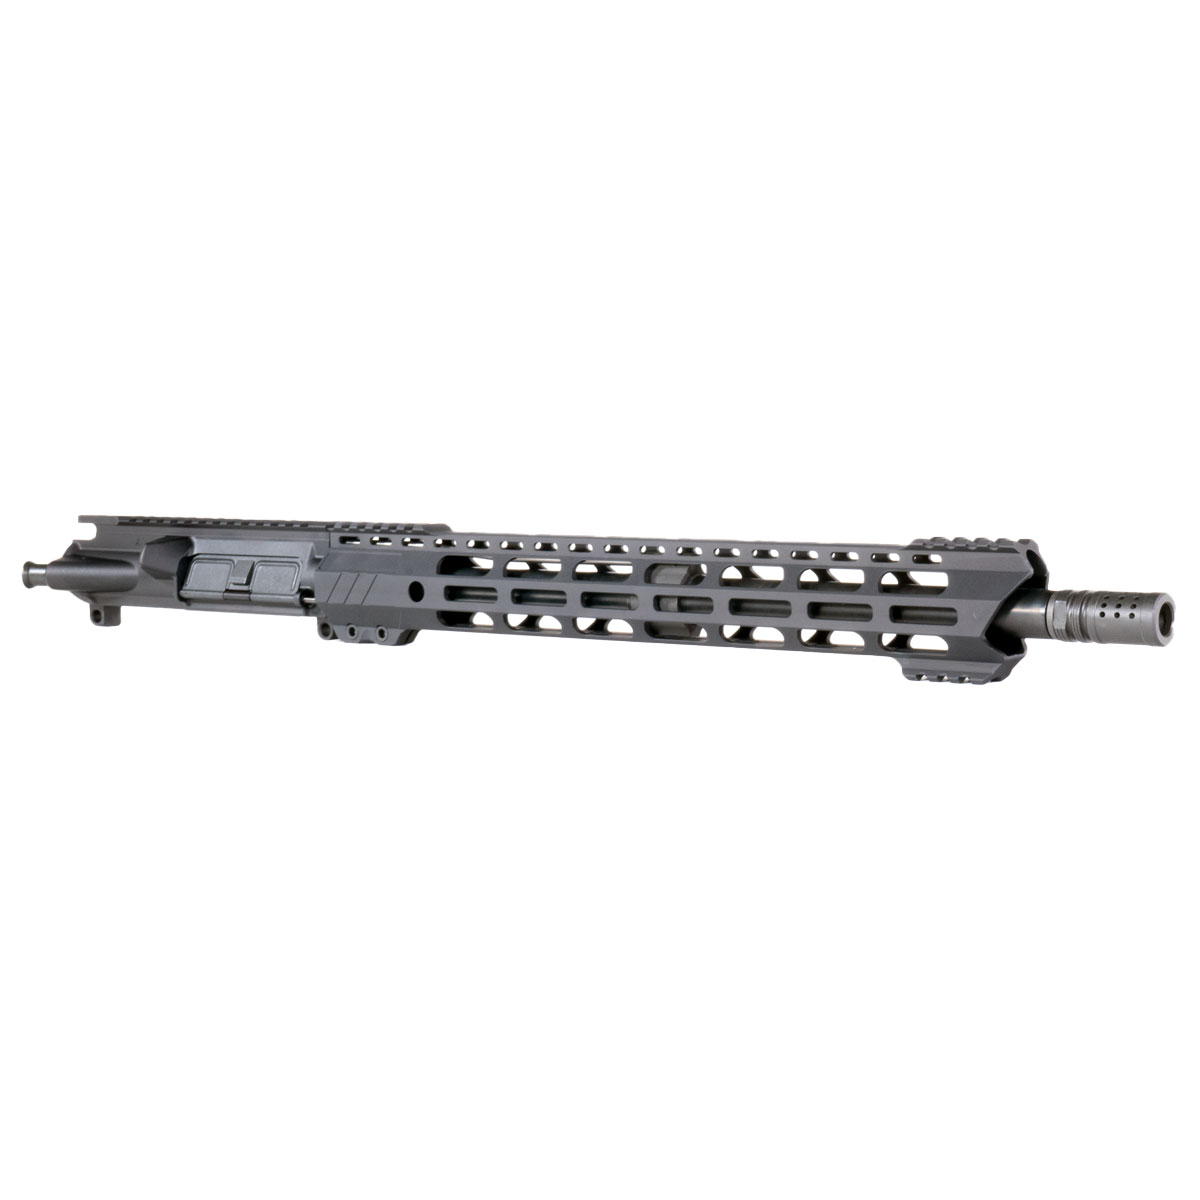 OTD 'Phantom Leap' 16-inch AR-15 .458 SOCOM Nitride Rifle Upper Build Kit